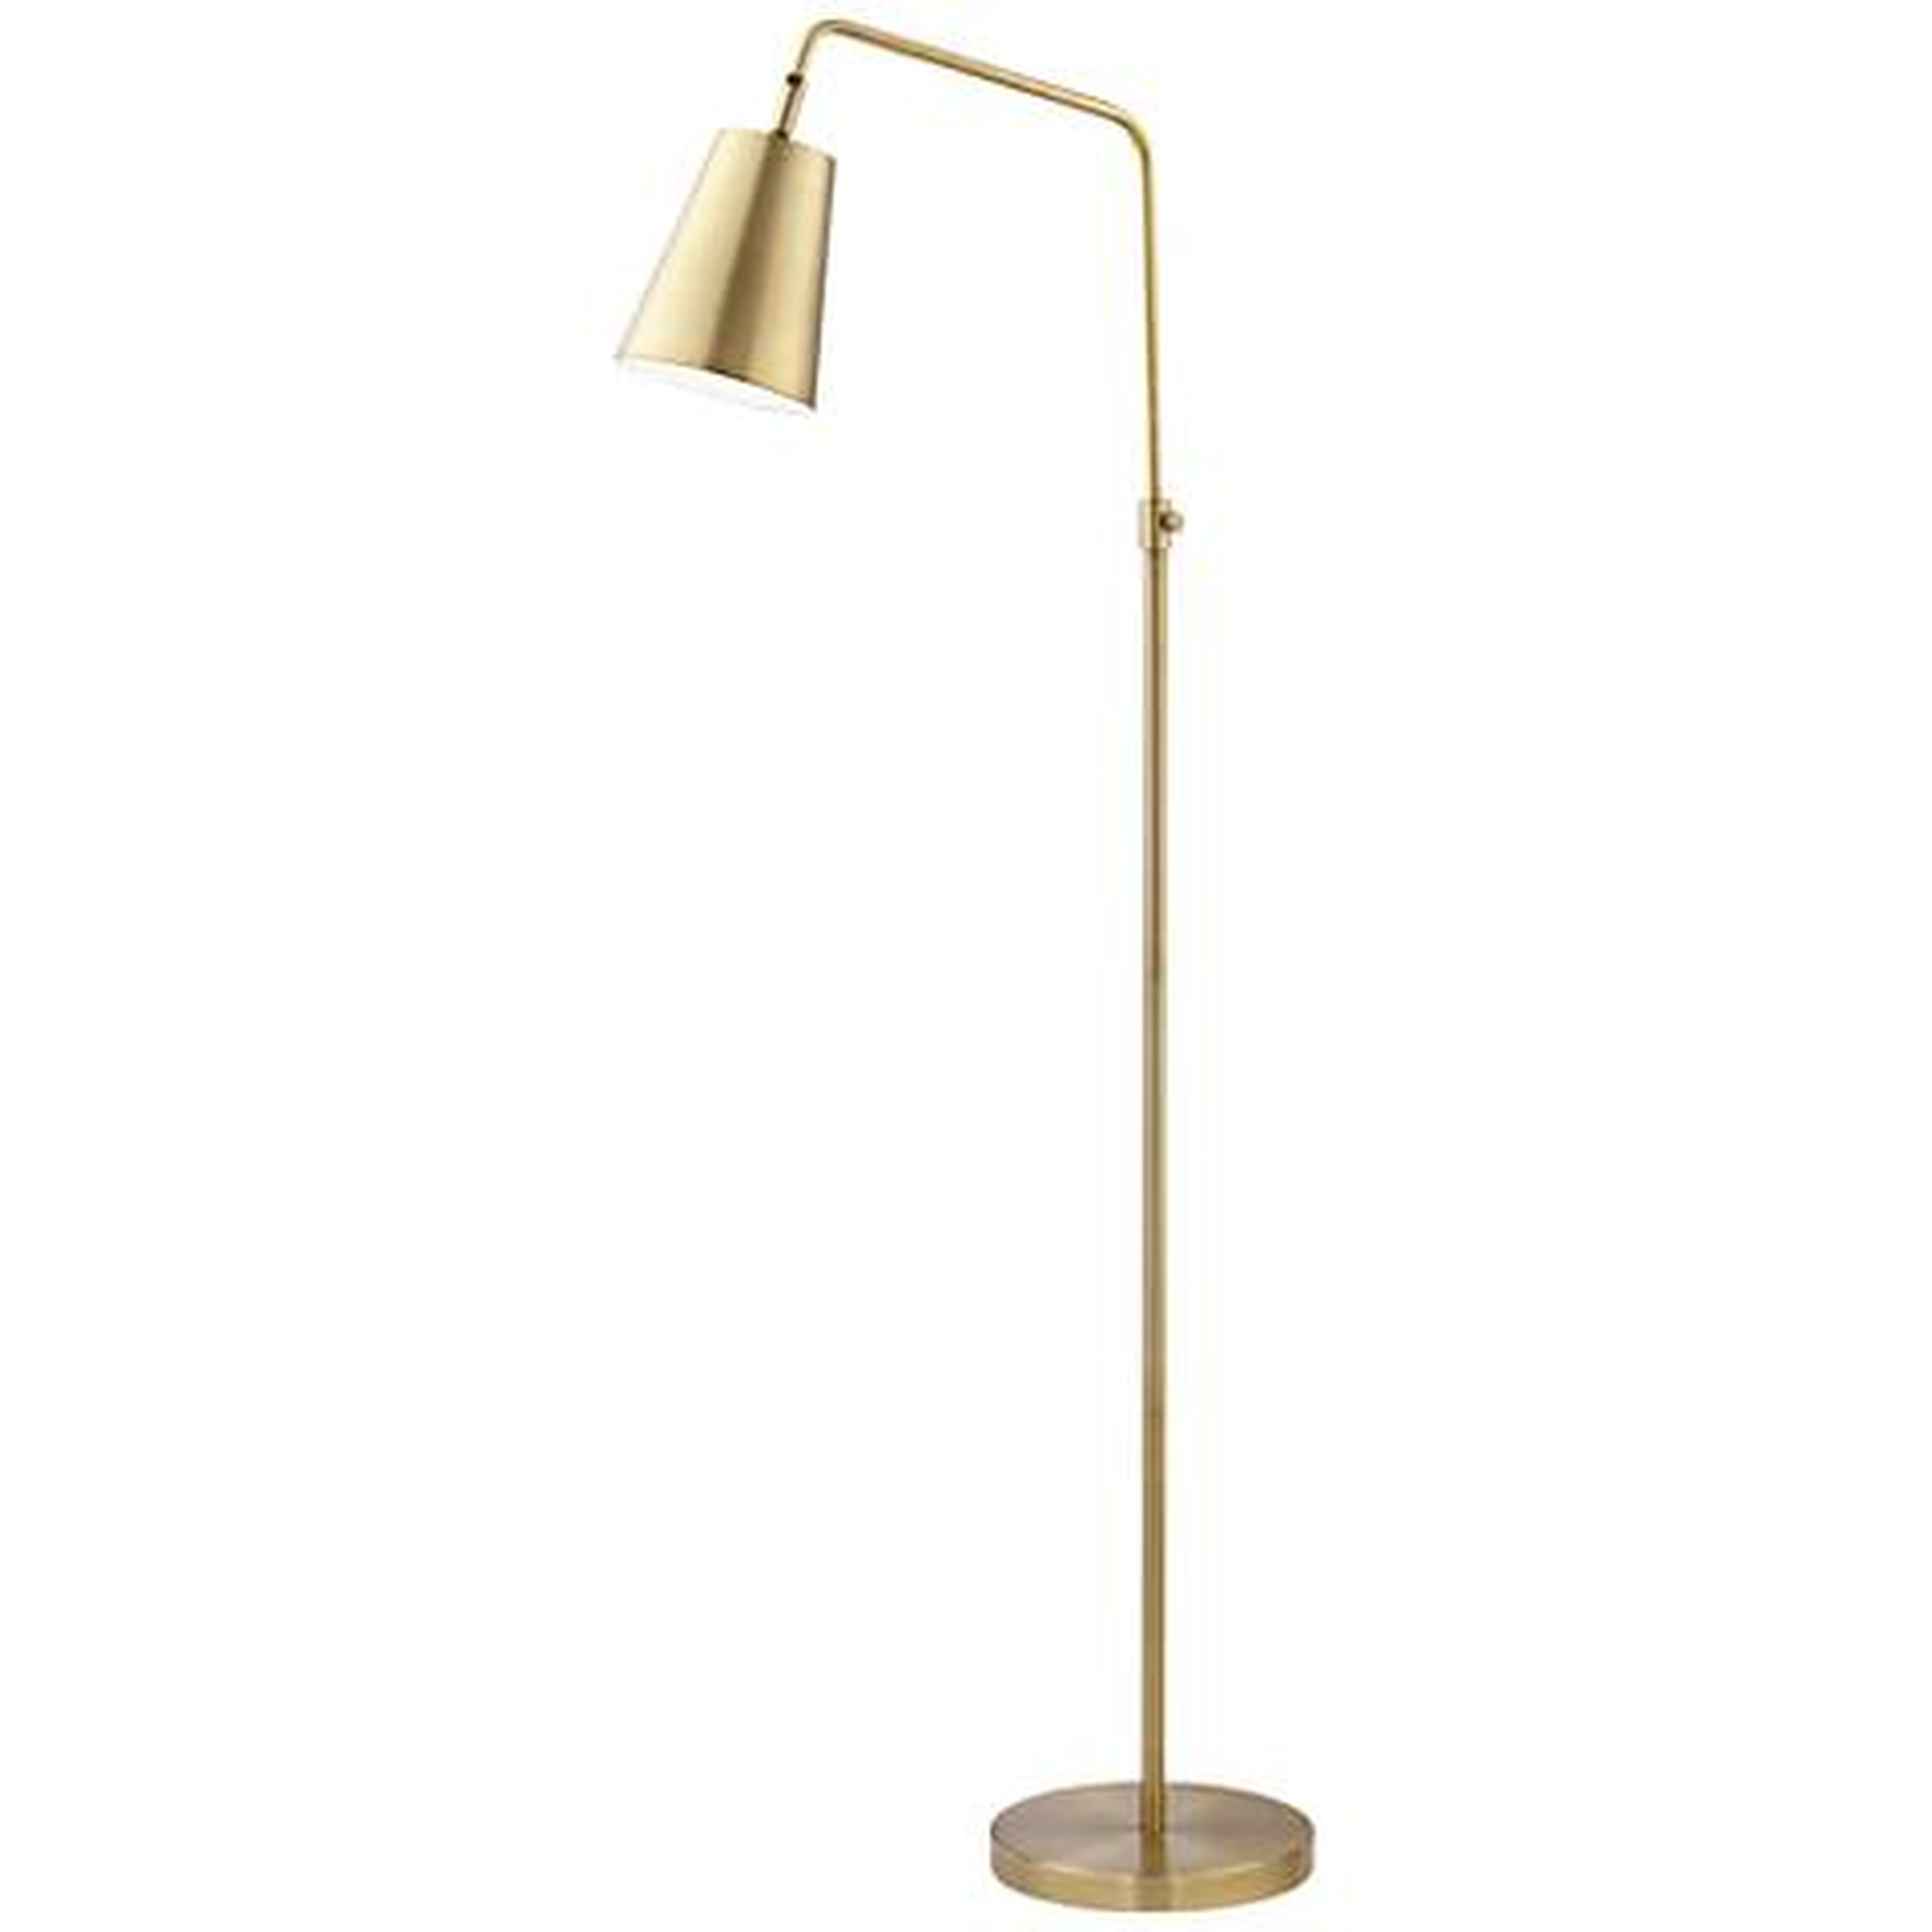 Zella Brushed Antique Brass Downbridge Floor Lamp - Lamps Plus